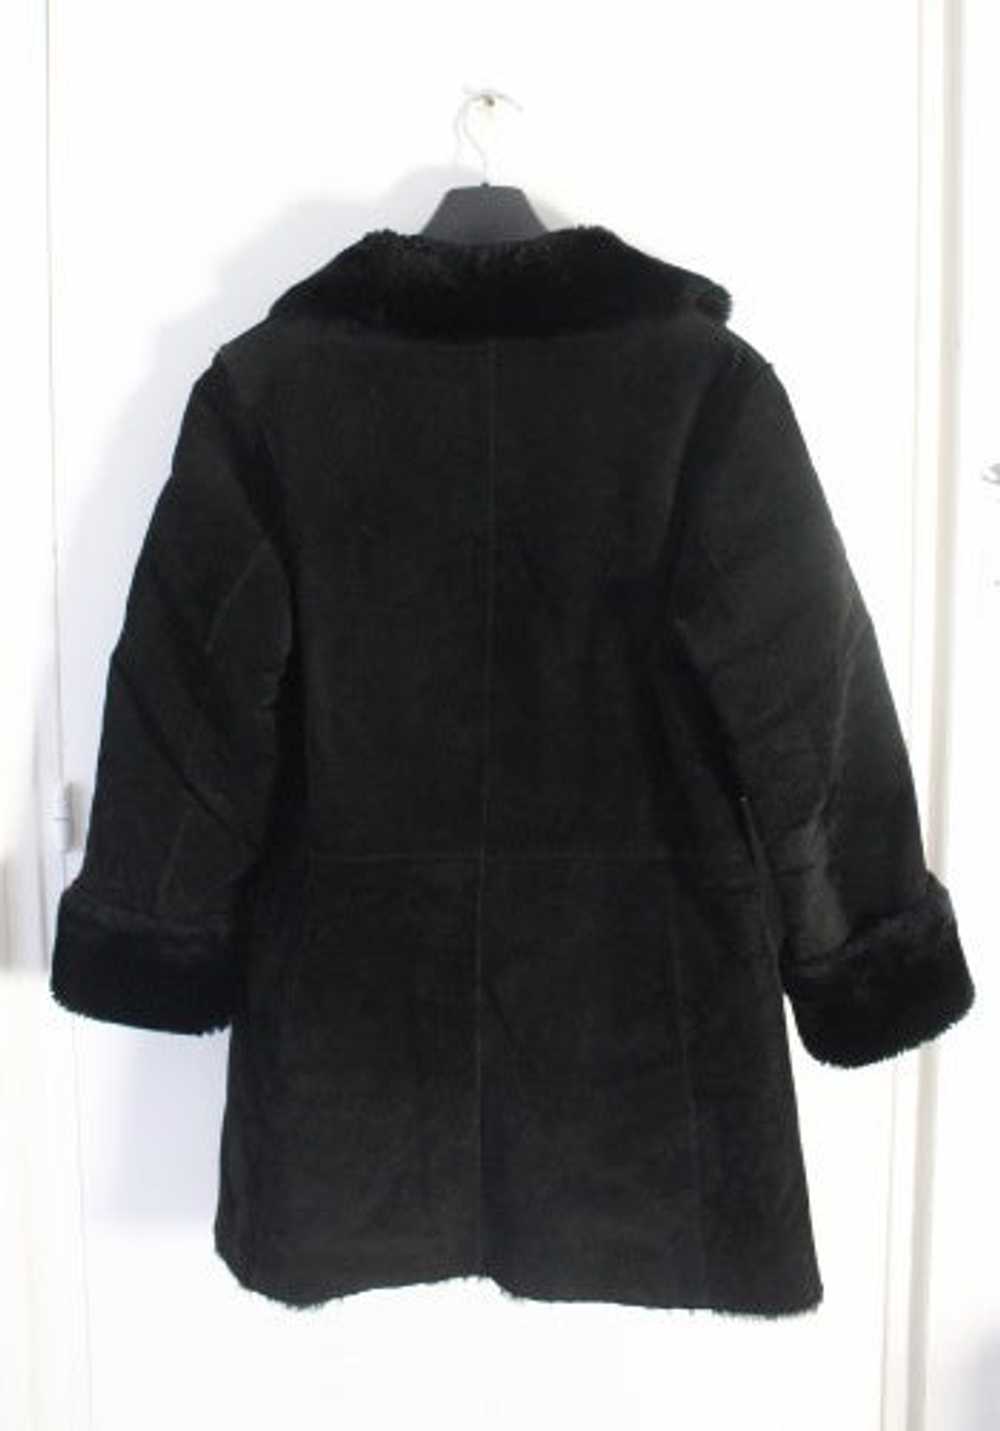 Sheepskin coat - Coat 100% Split leather and full… - image 3